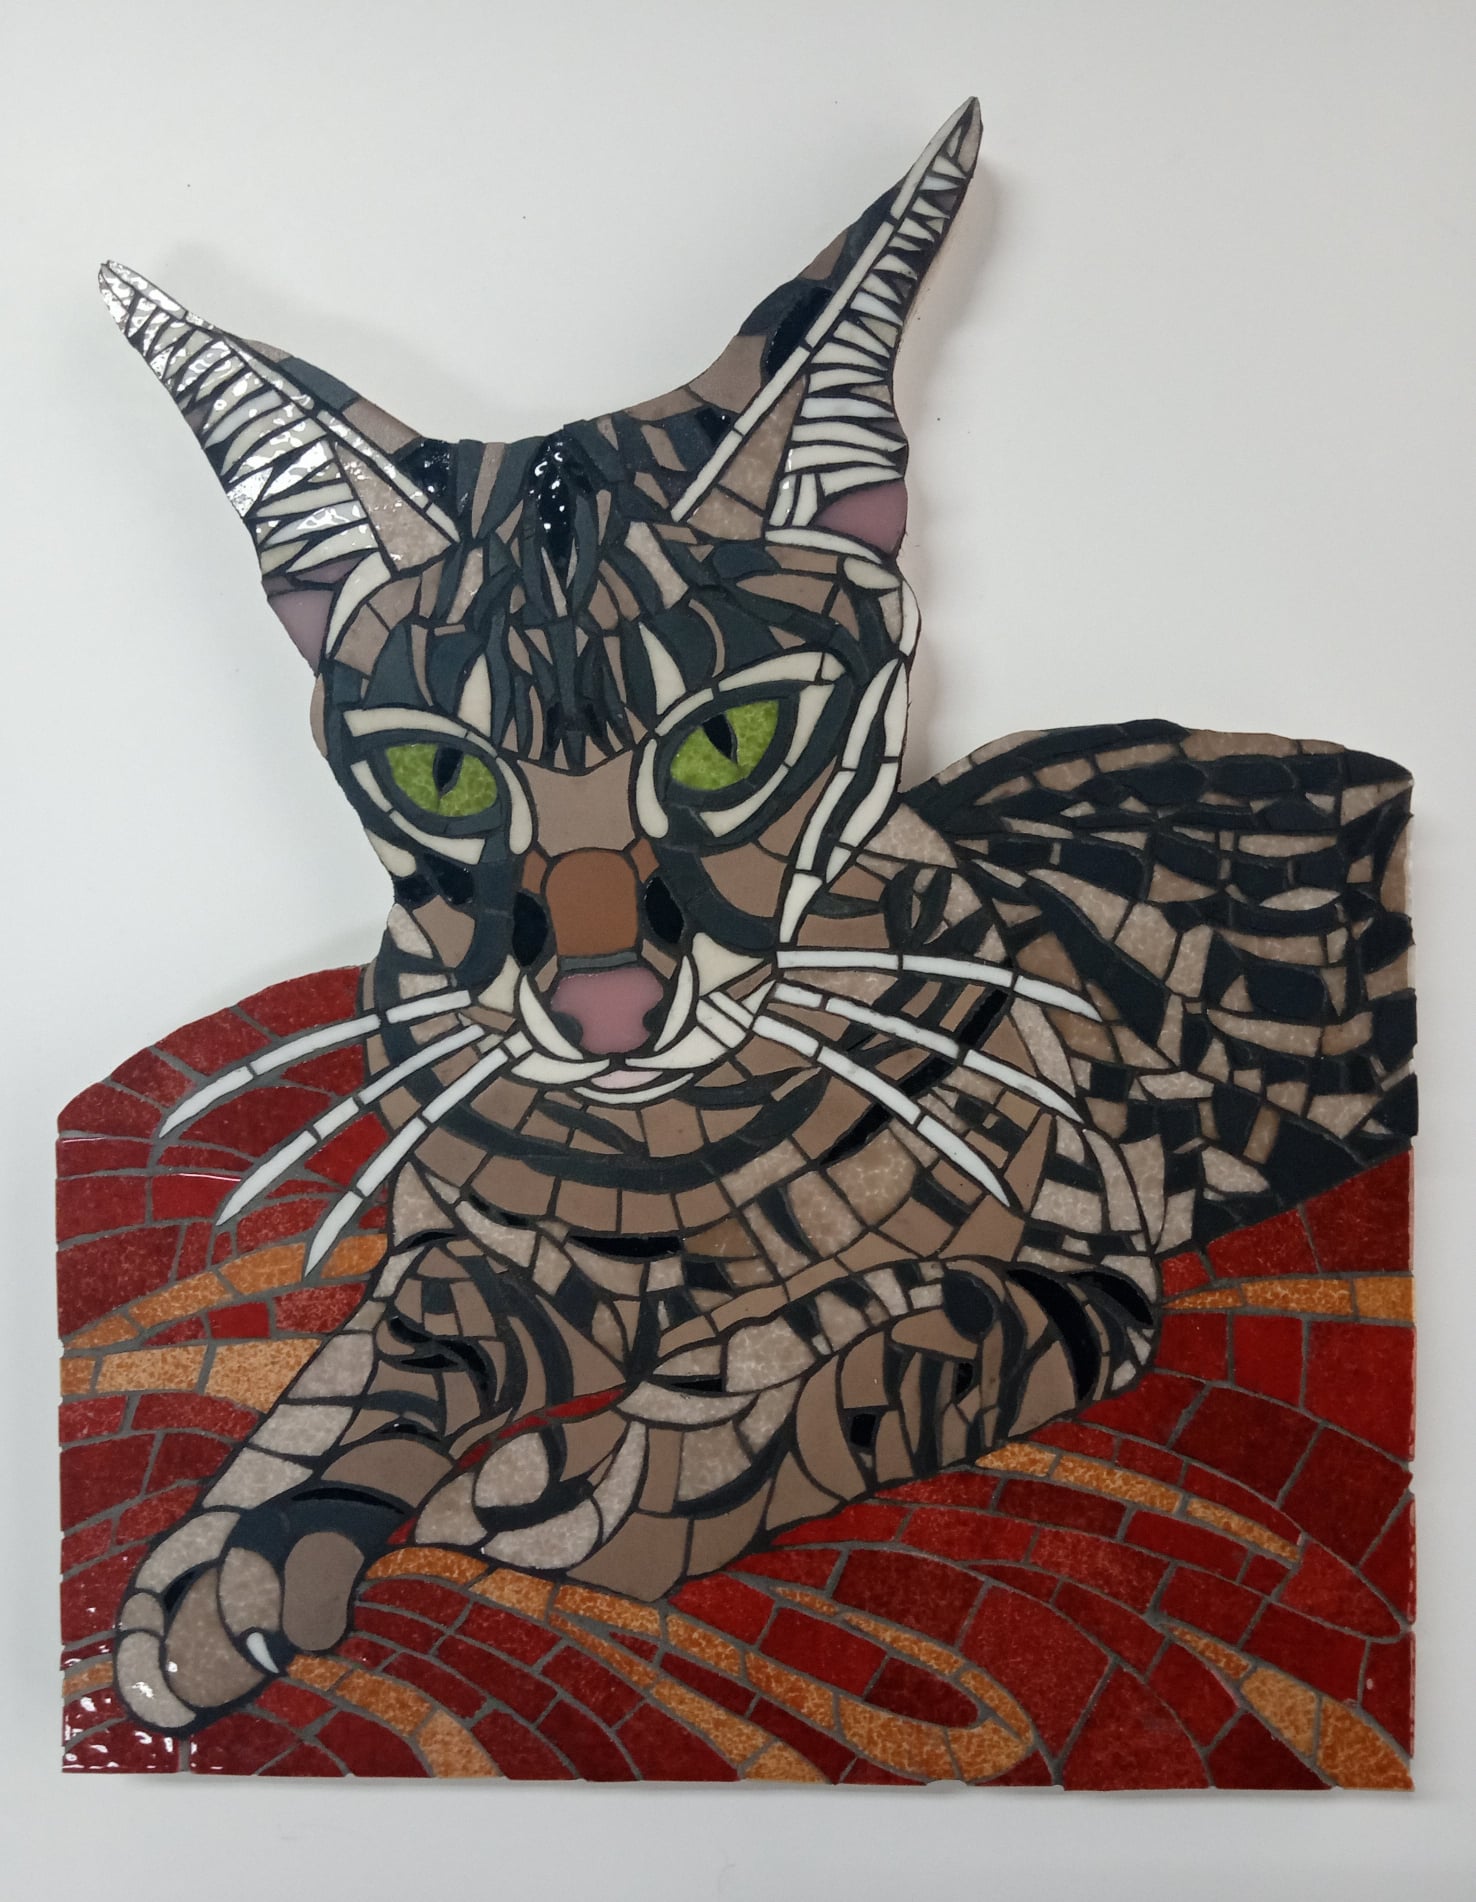 Dit mozaiek van deze Savannah kat is in opdracht gemaakt voor een klant in Amerika.